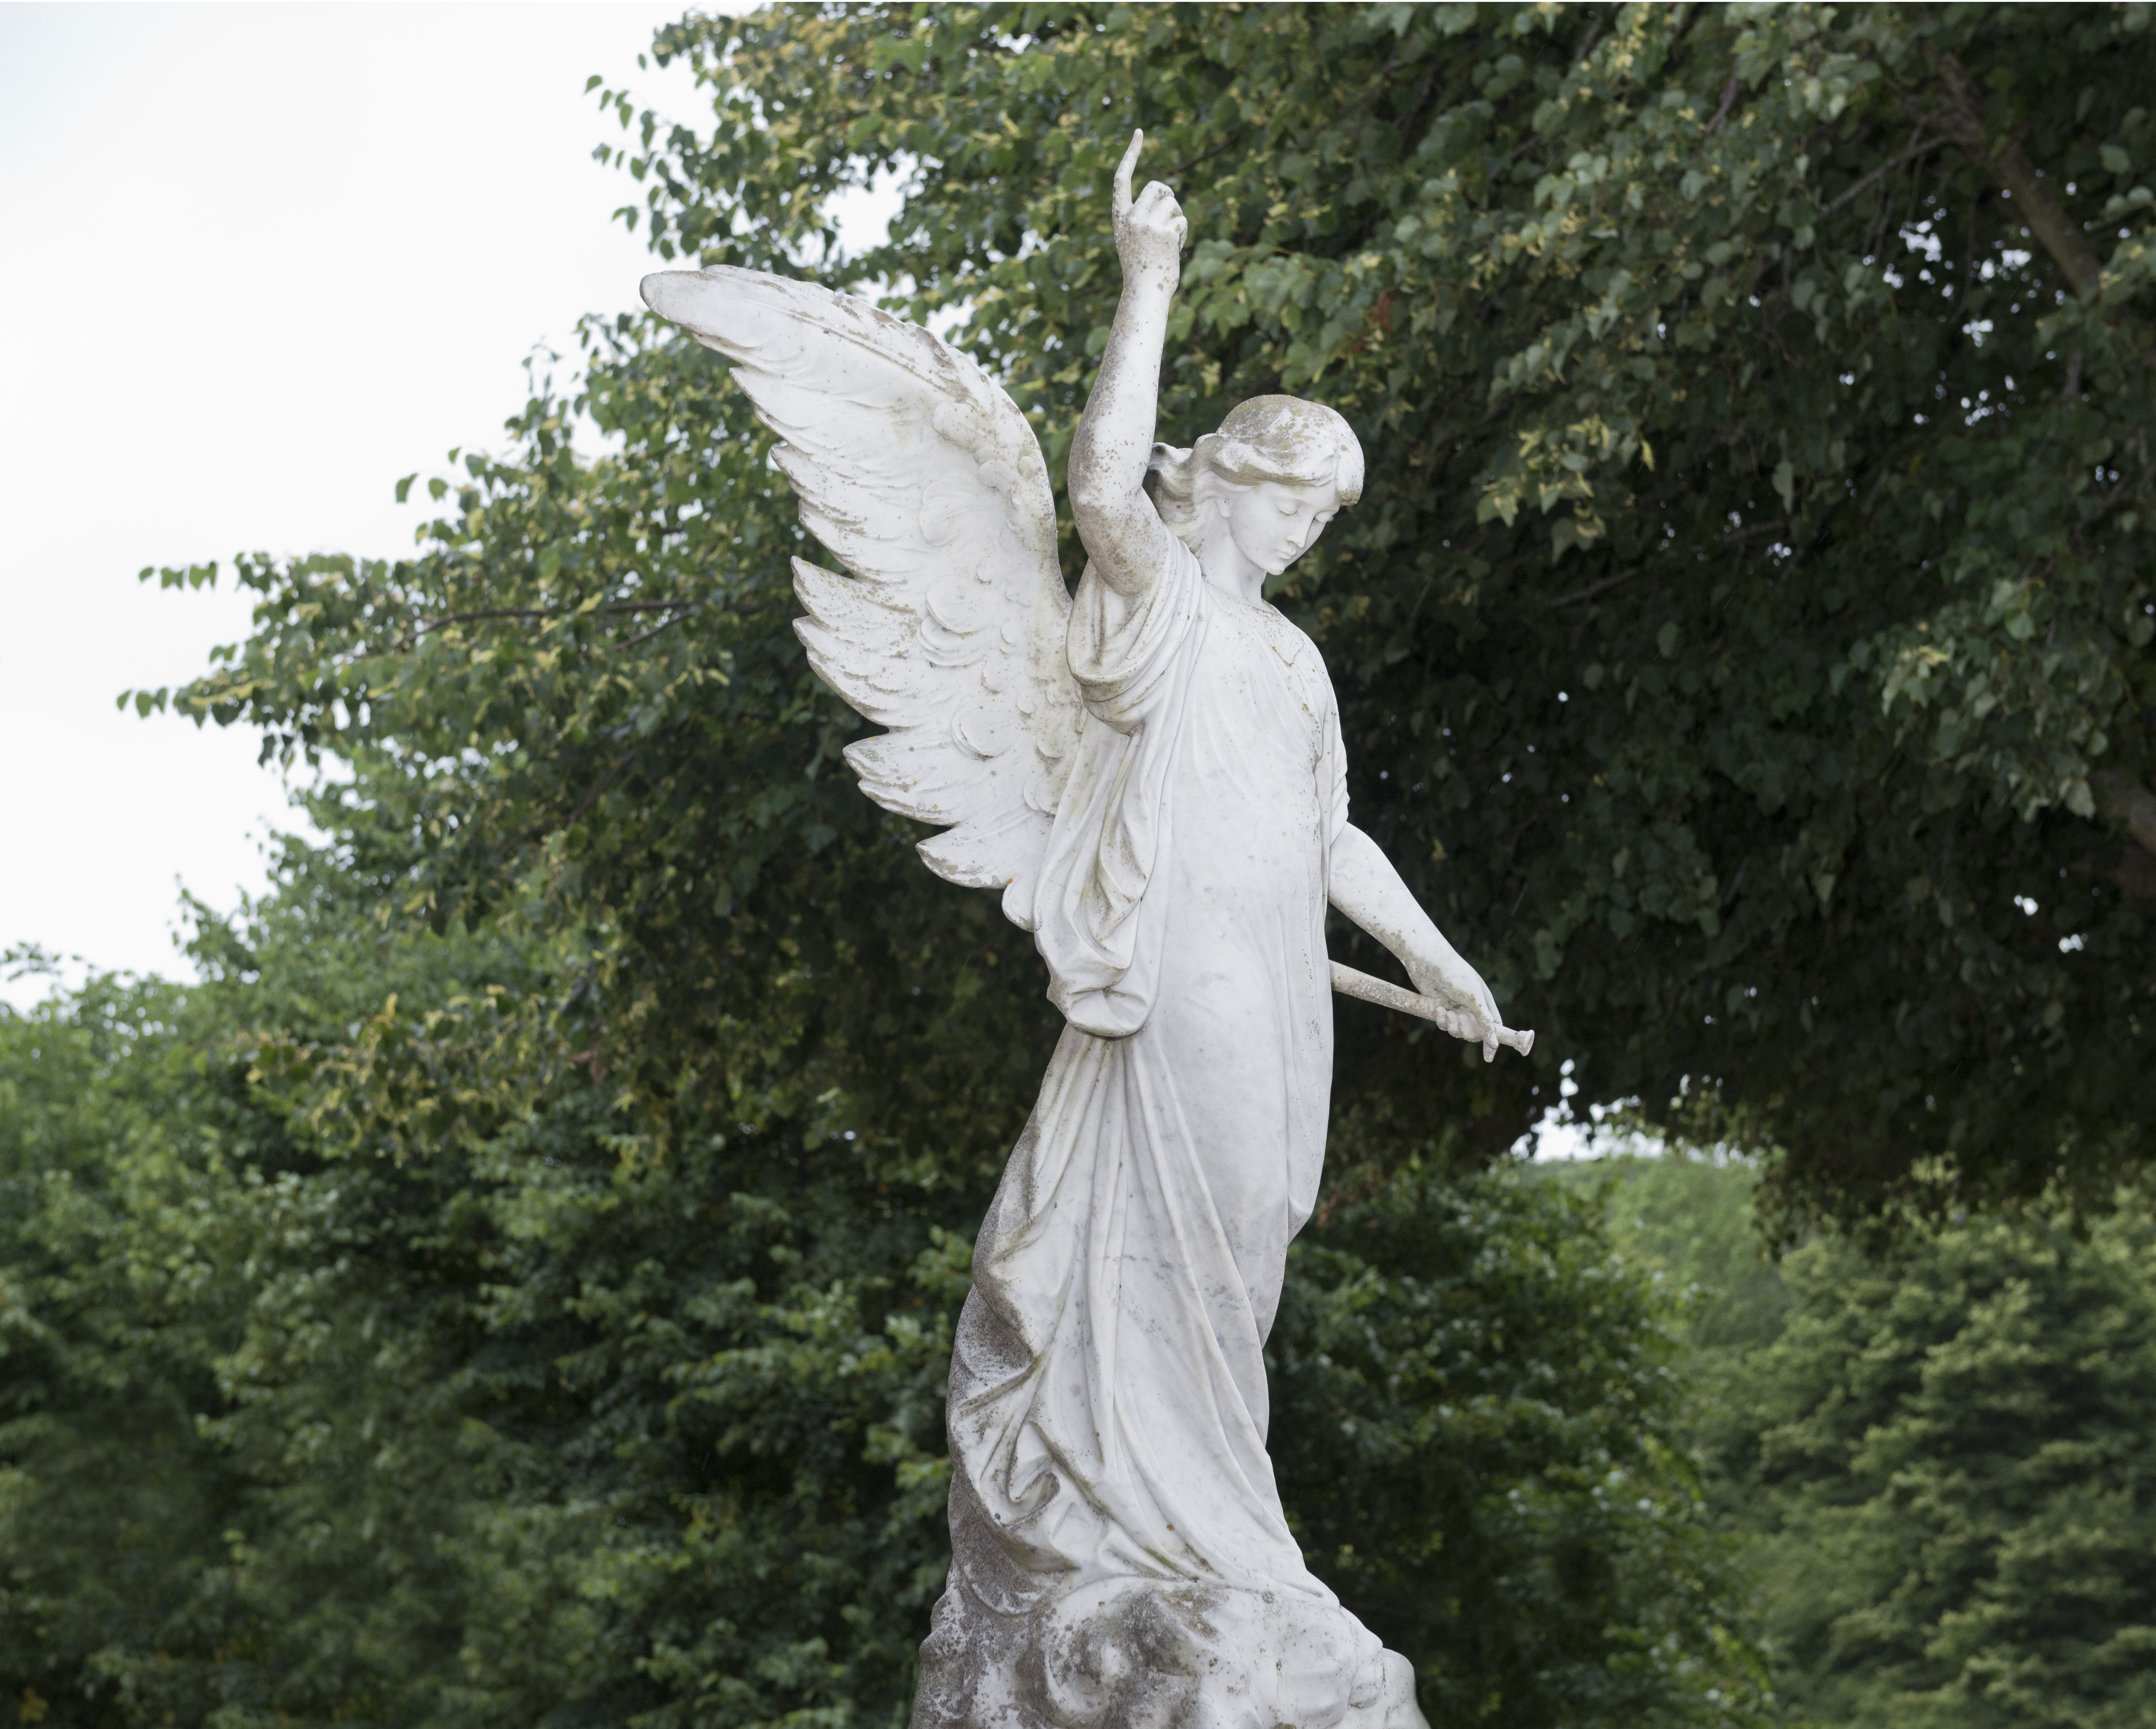 Statue, St Brelade Churchyard, Jersey